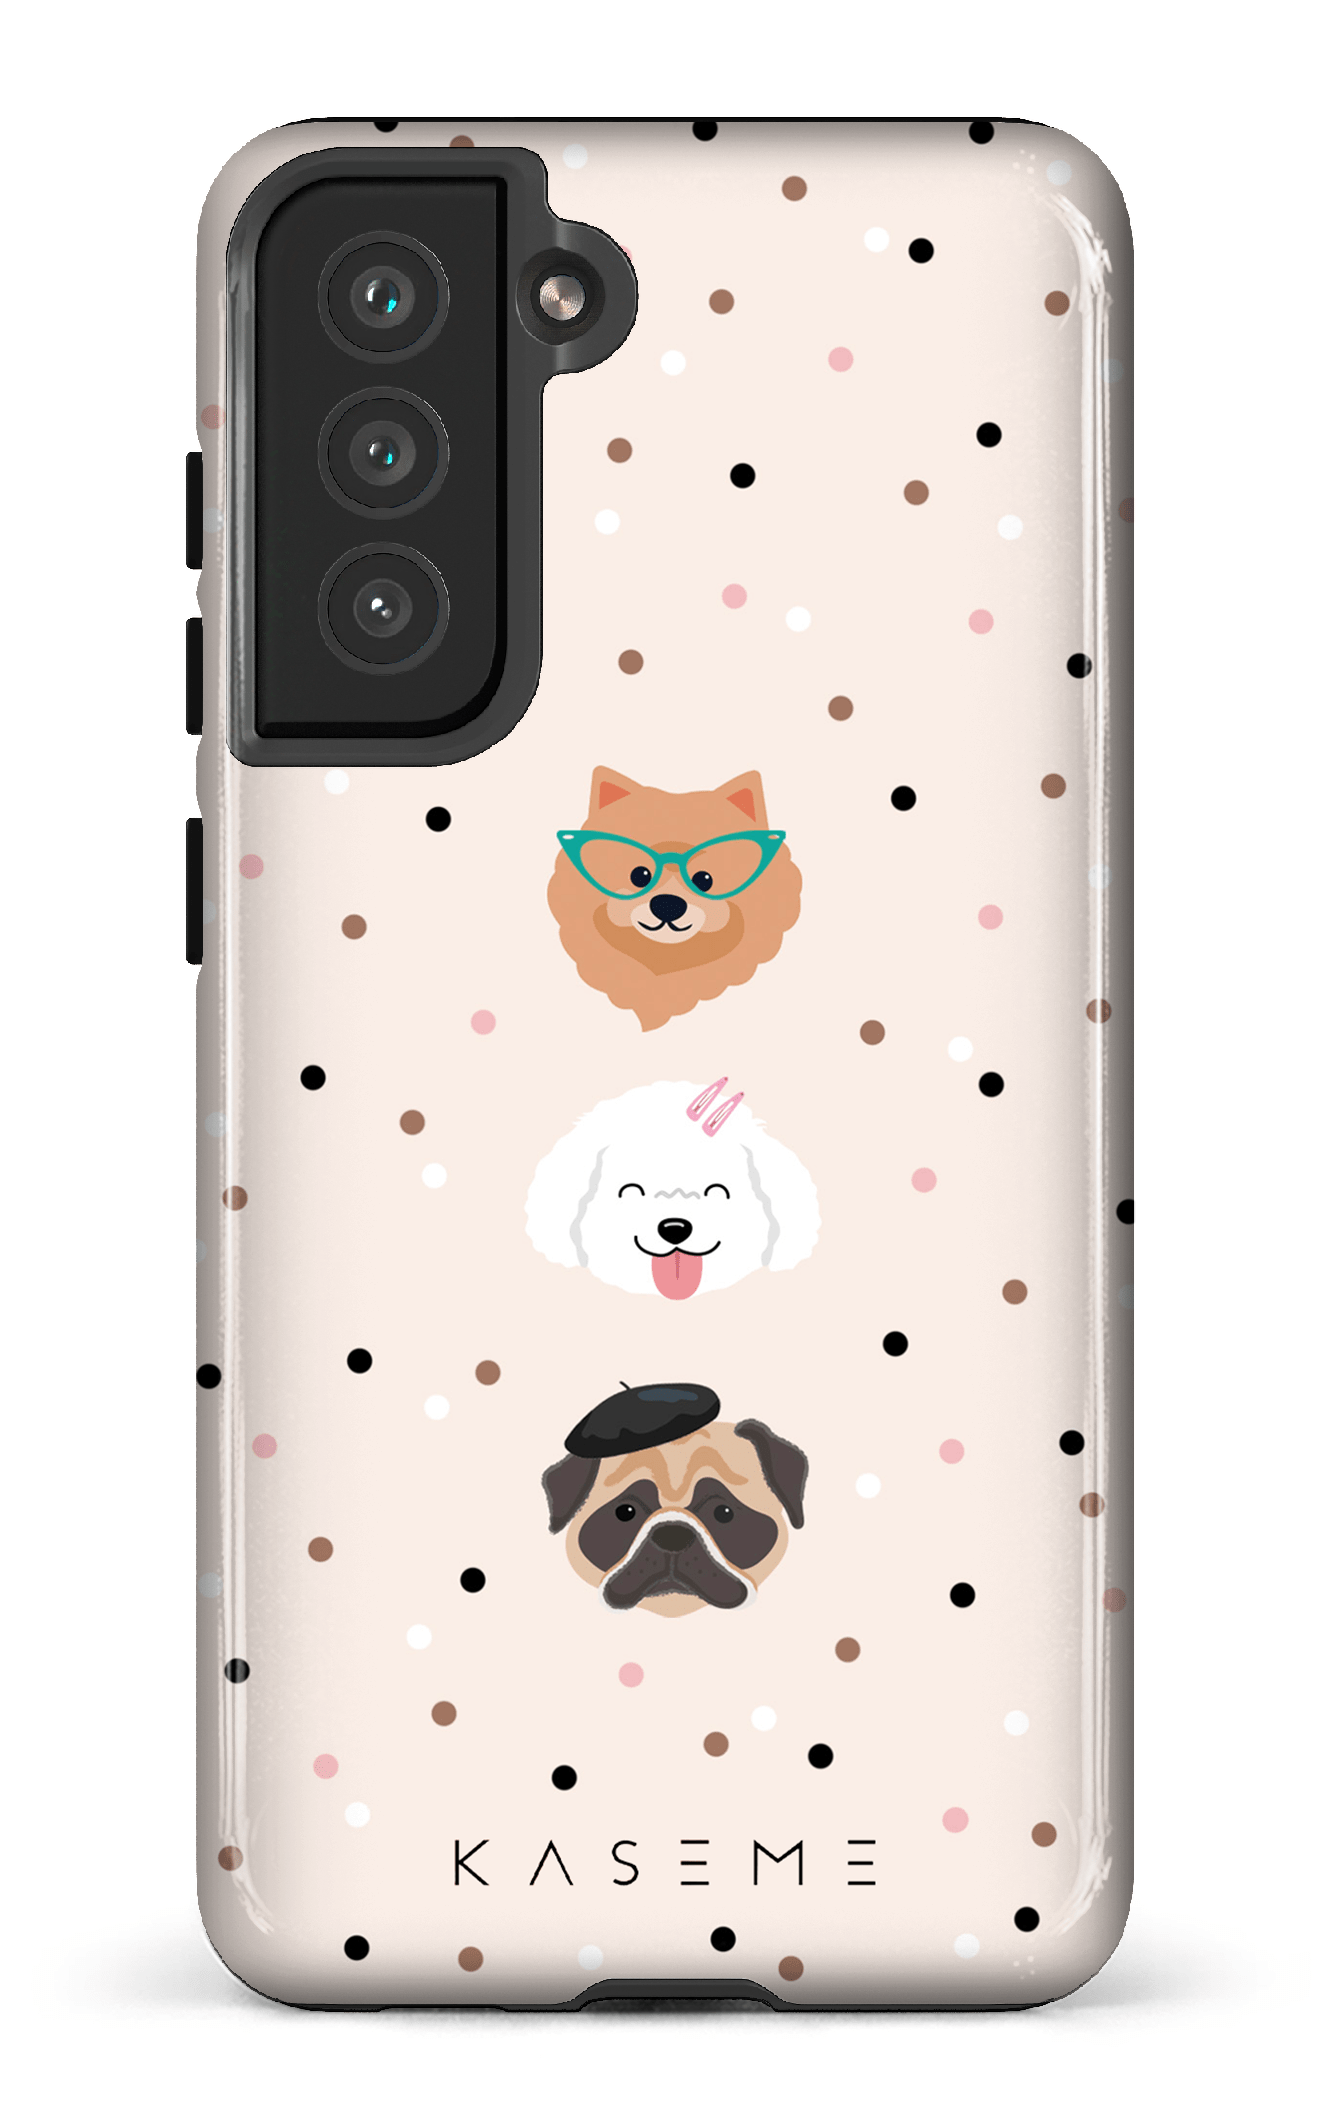 Dog lover by Marina Bastarache x SPCA - Galaxy S21 FE